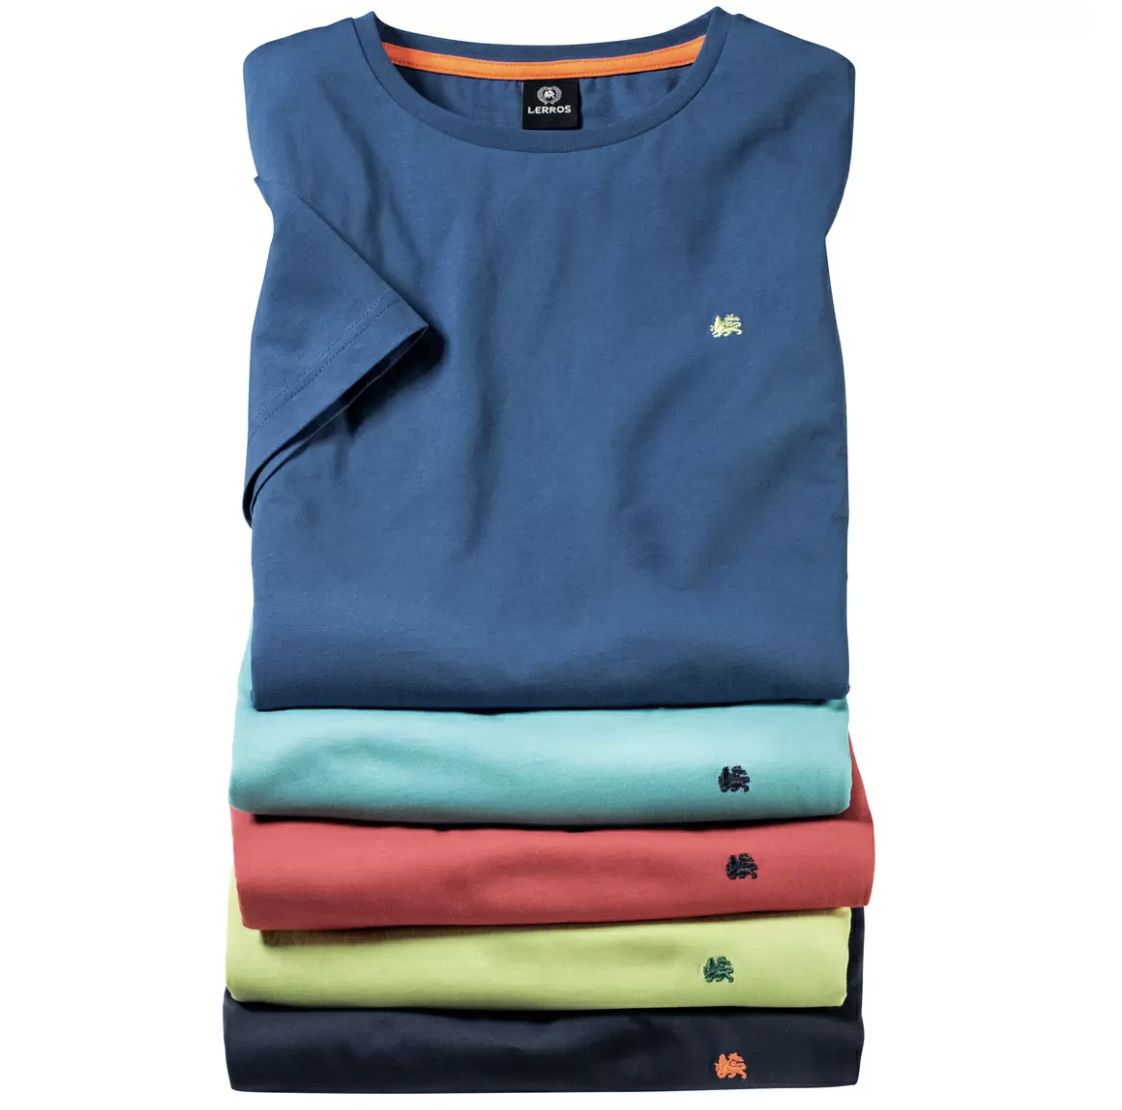 5er Pack Lerros Baumwoll T-Shirts für 51,99€ (statt 65€) + GRATIS Kühltasche